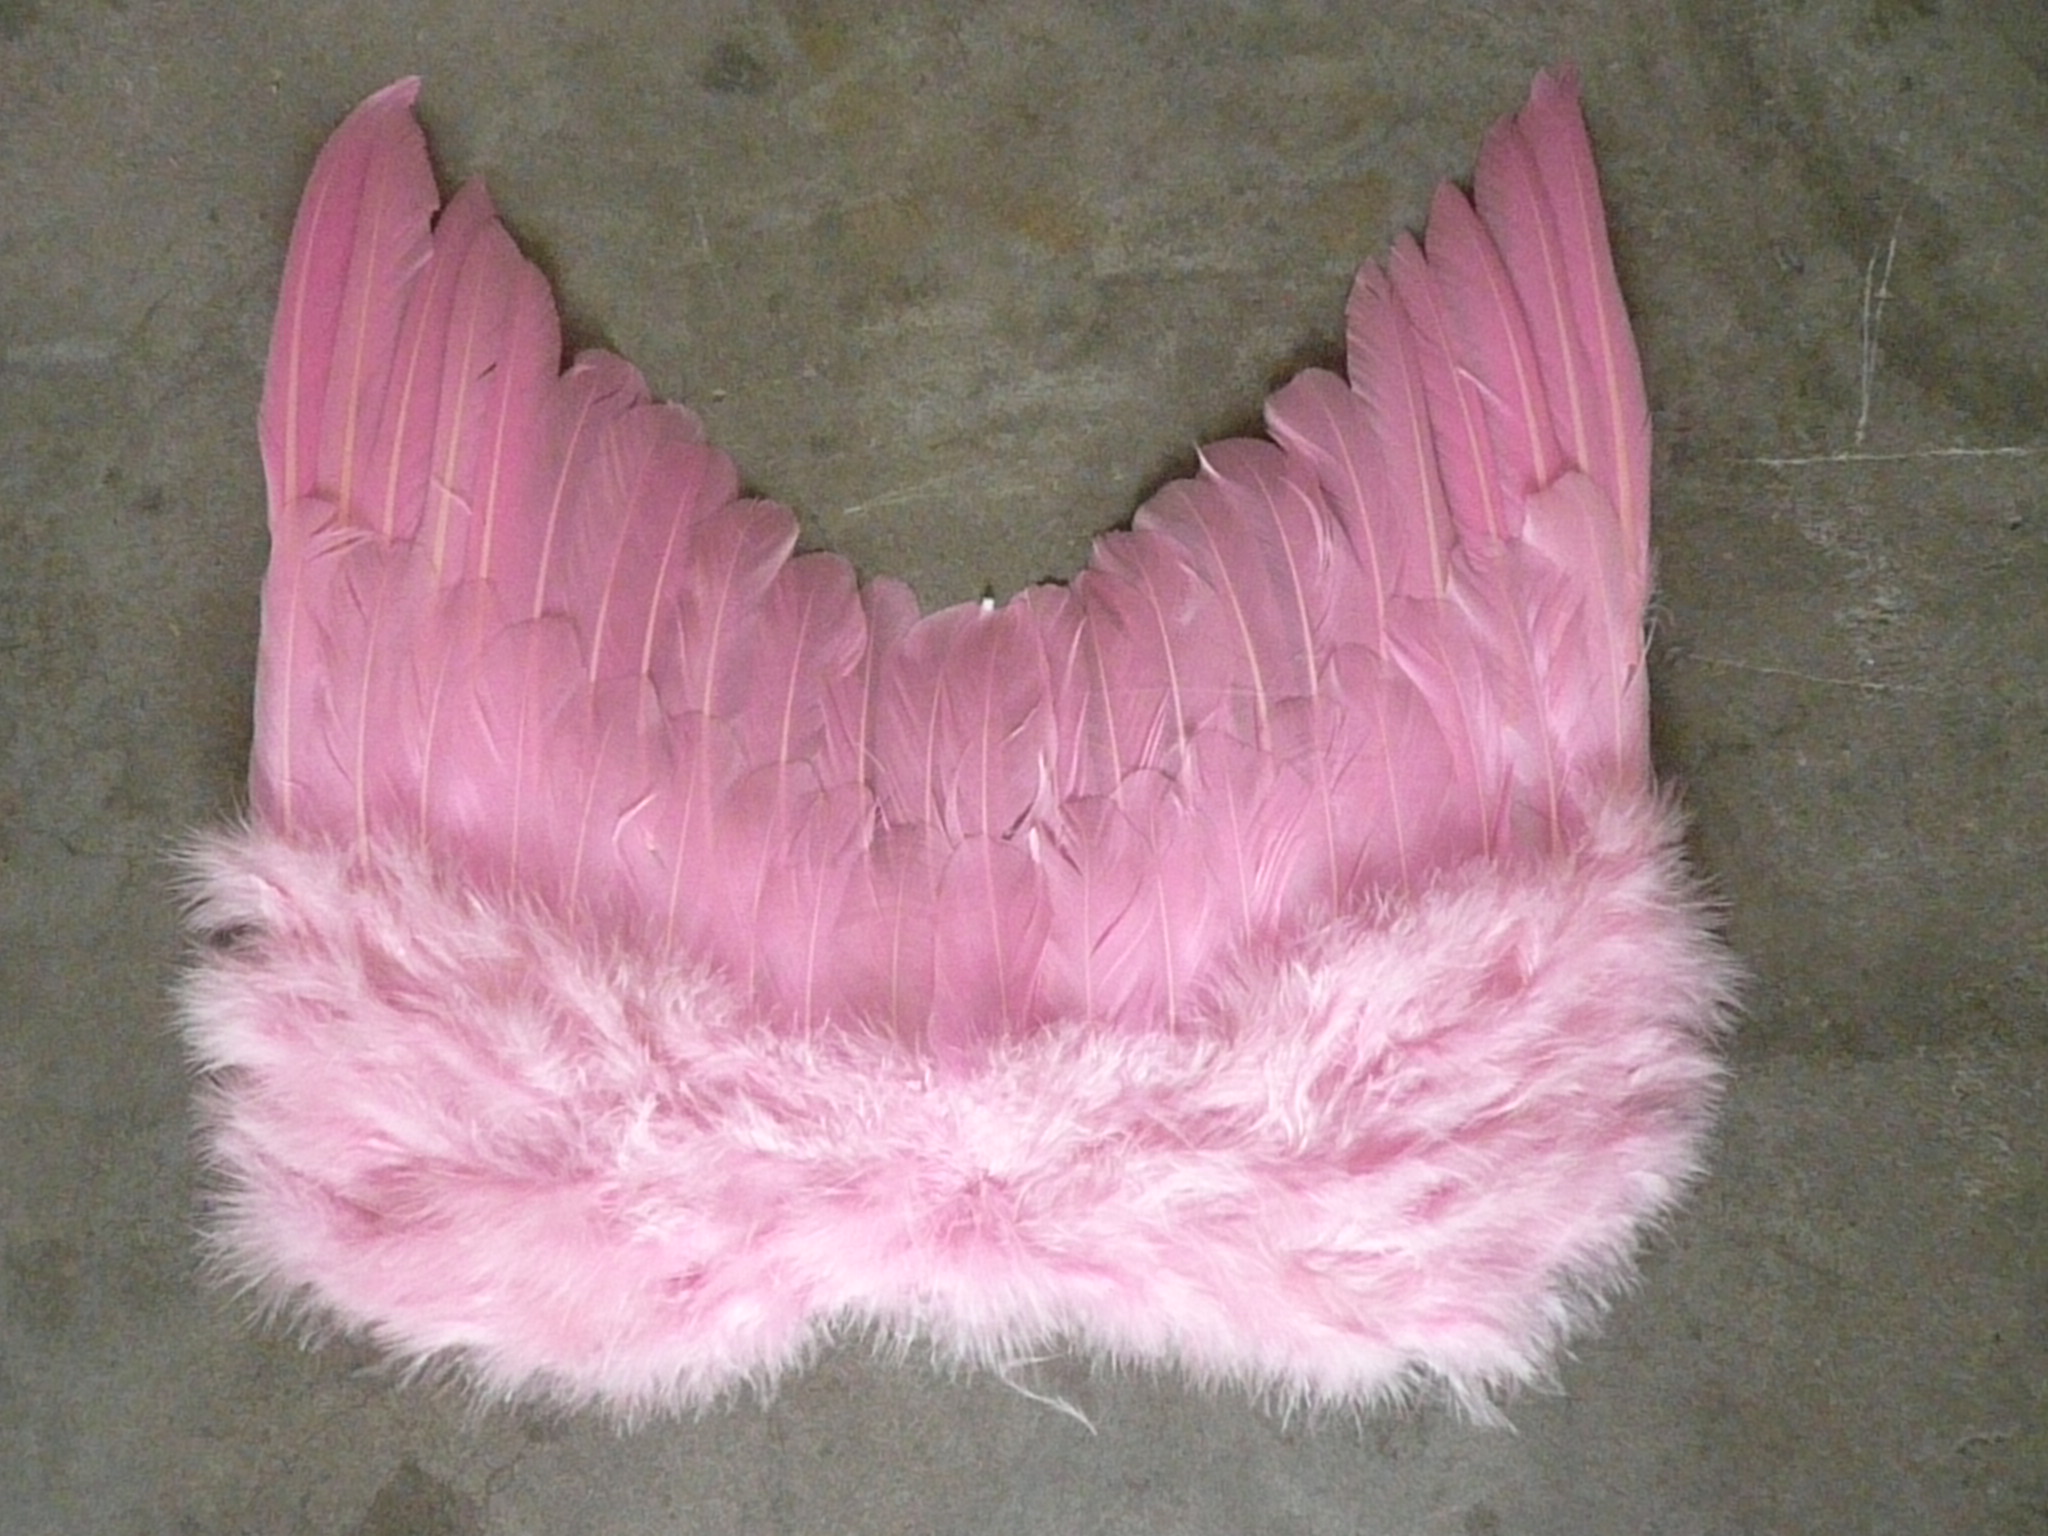  перо ангела крылья для продажи - Китай поставщика w-1111  40 cm 40cm